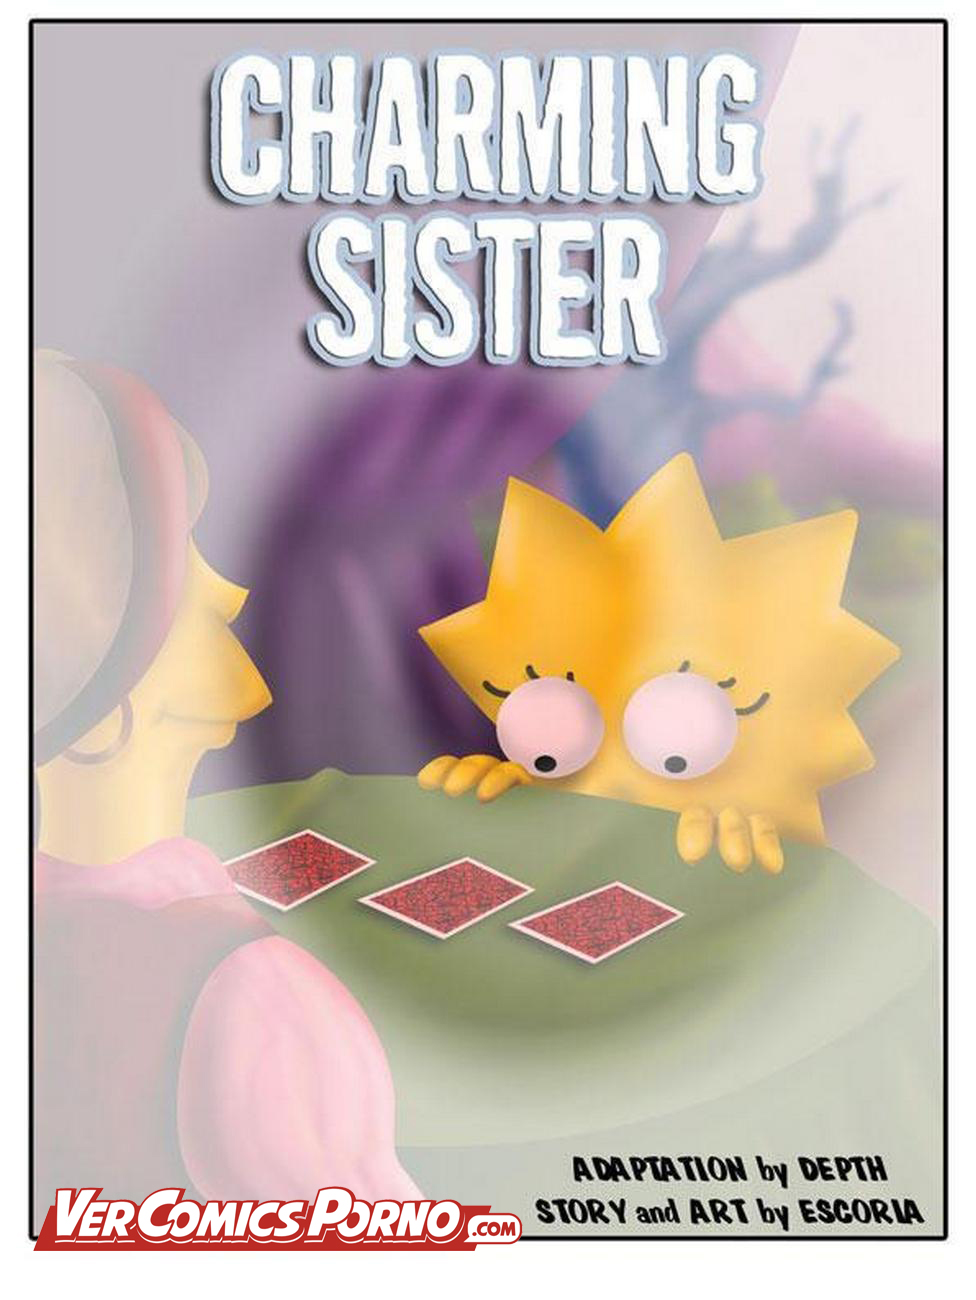 976px x 1300px - Los Simpsons: Lisa y Maggie teniendo una aventura lÃ©sbica - Vercomicsporno